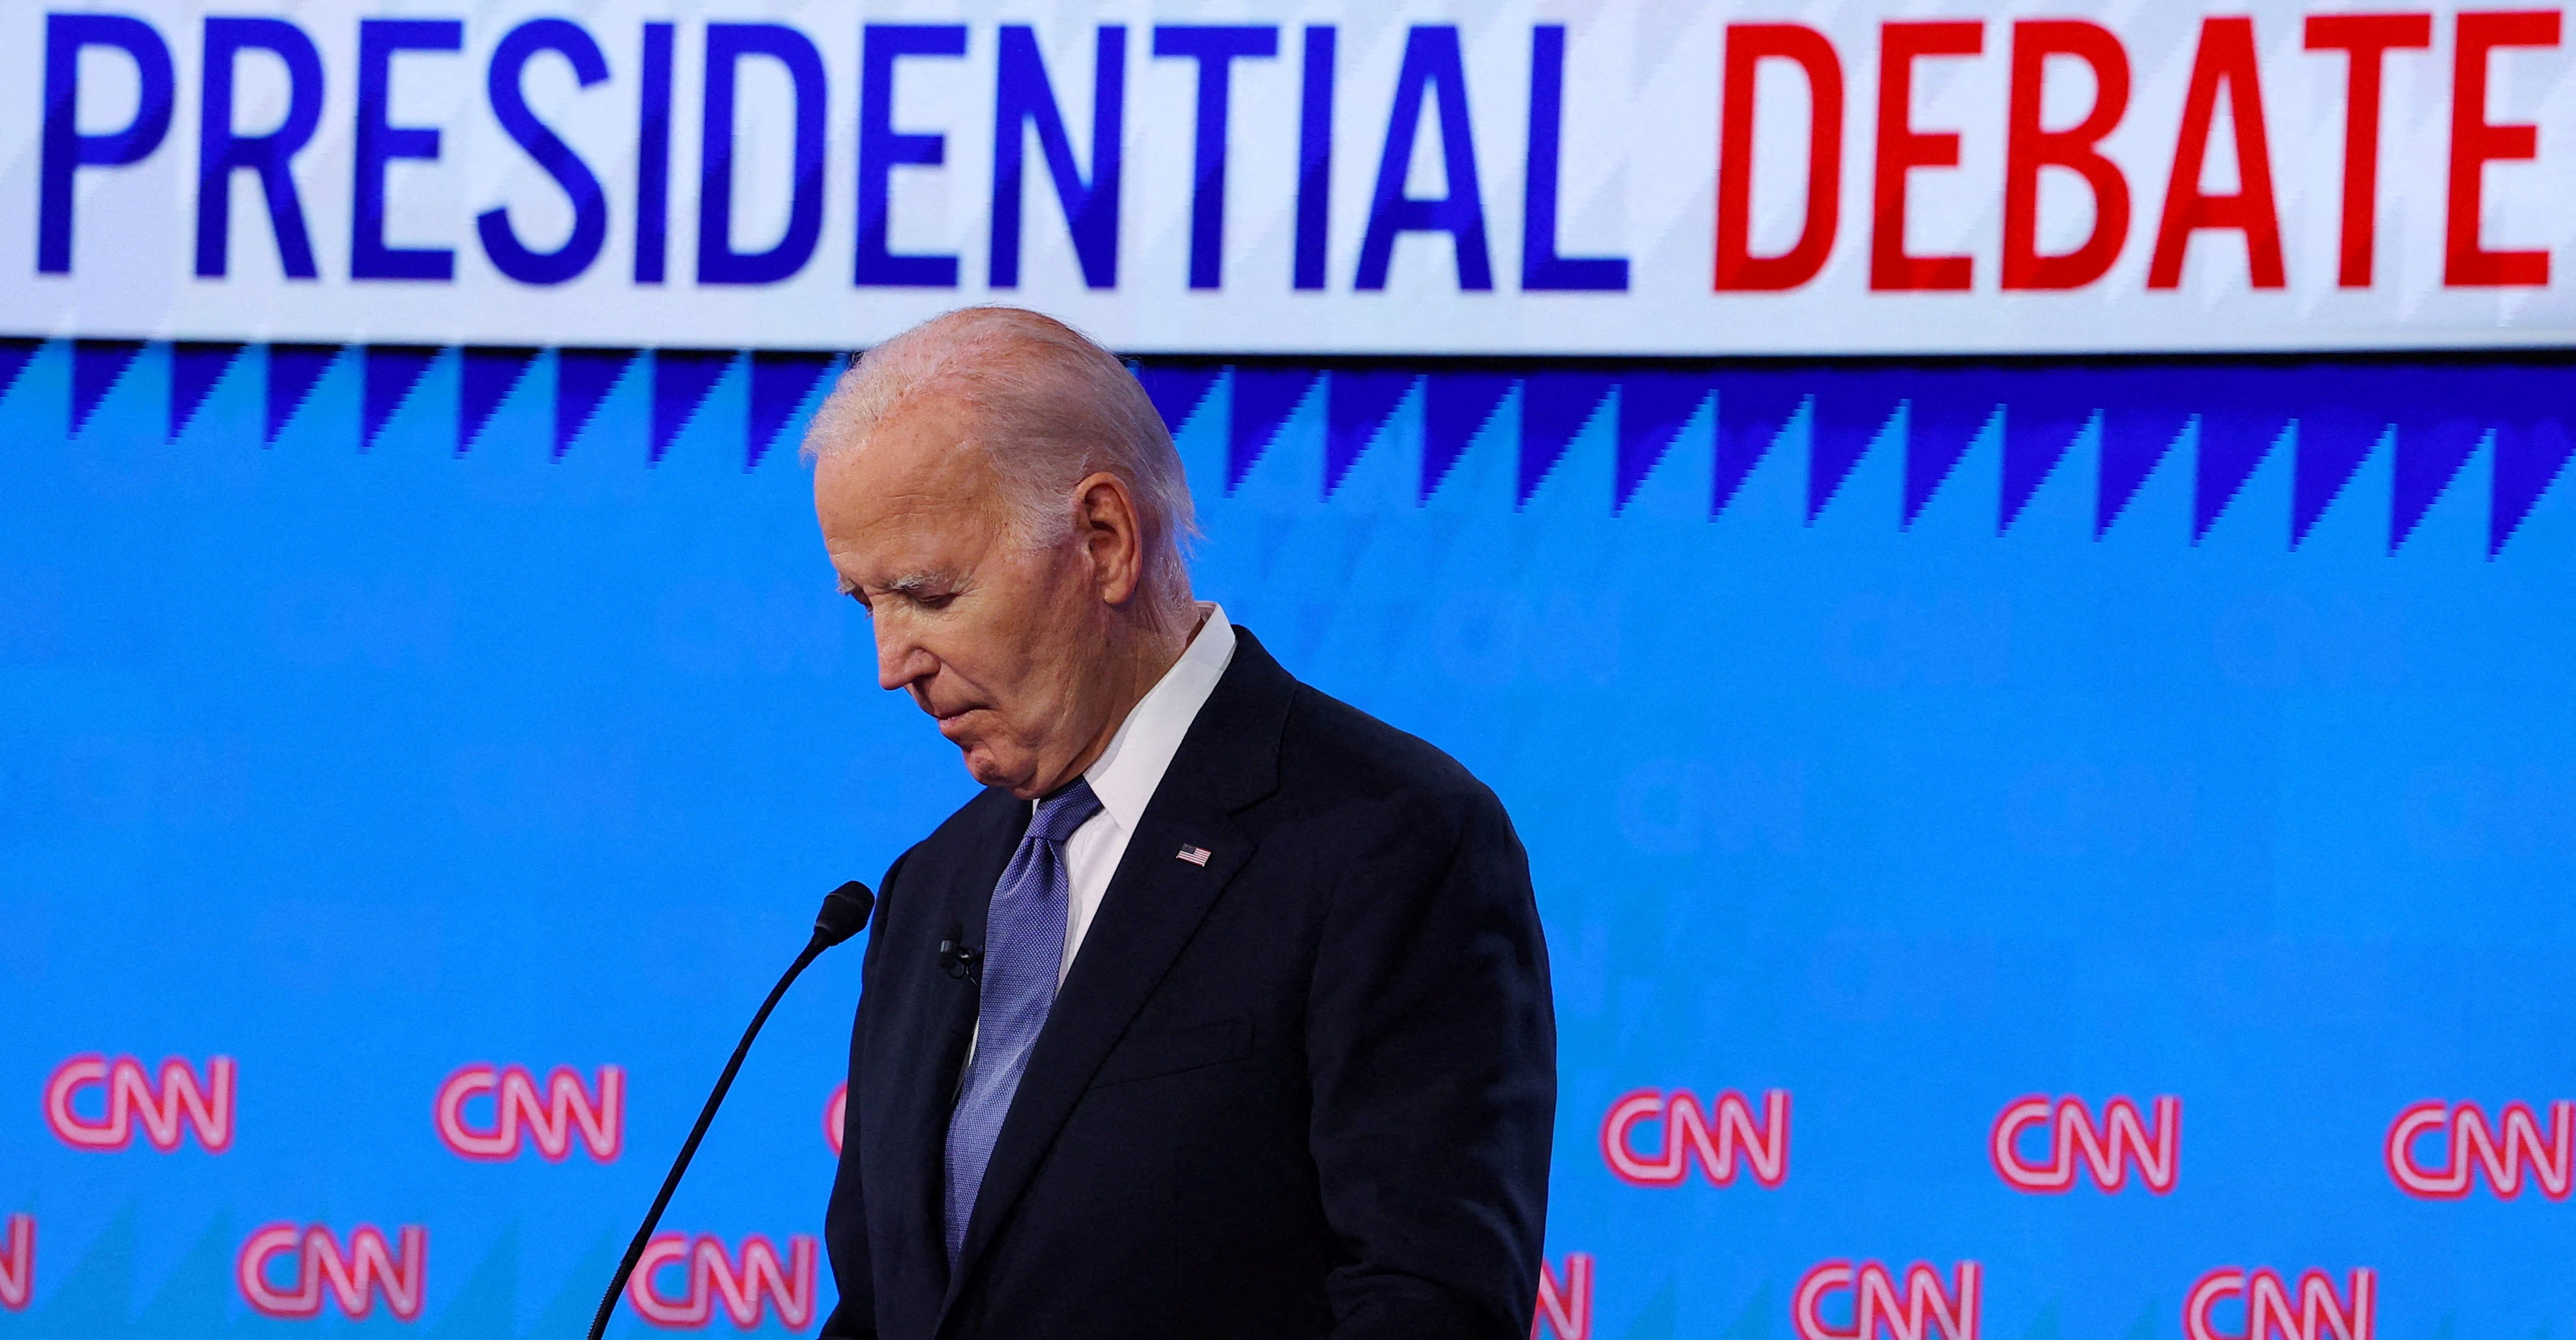 Joe Biden during last week’s debate, hosted by CNN